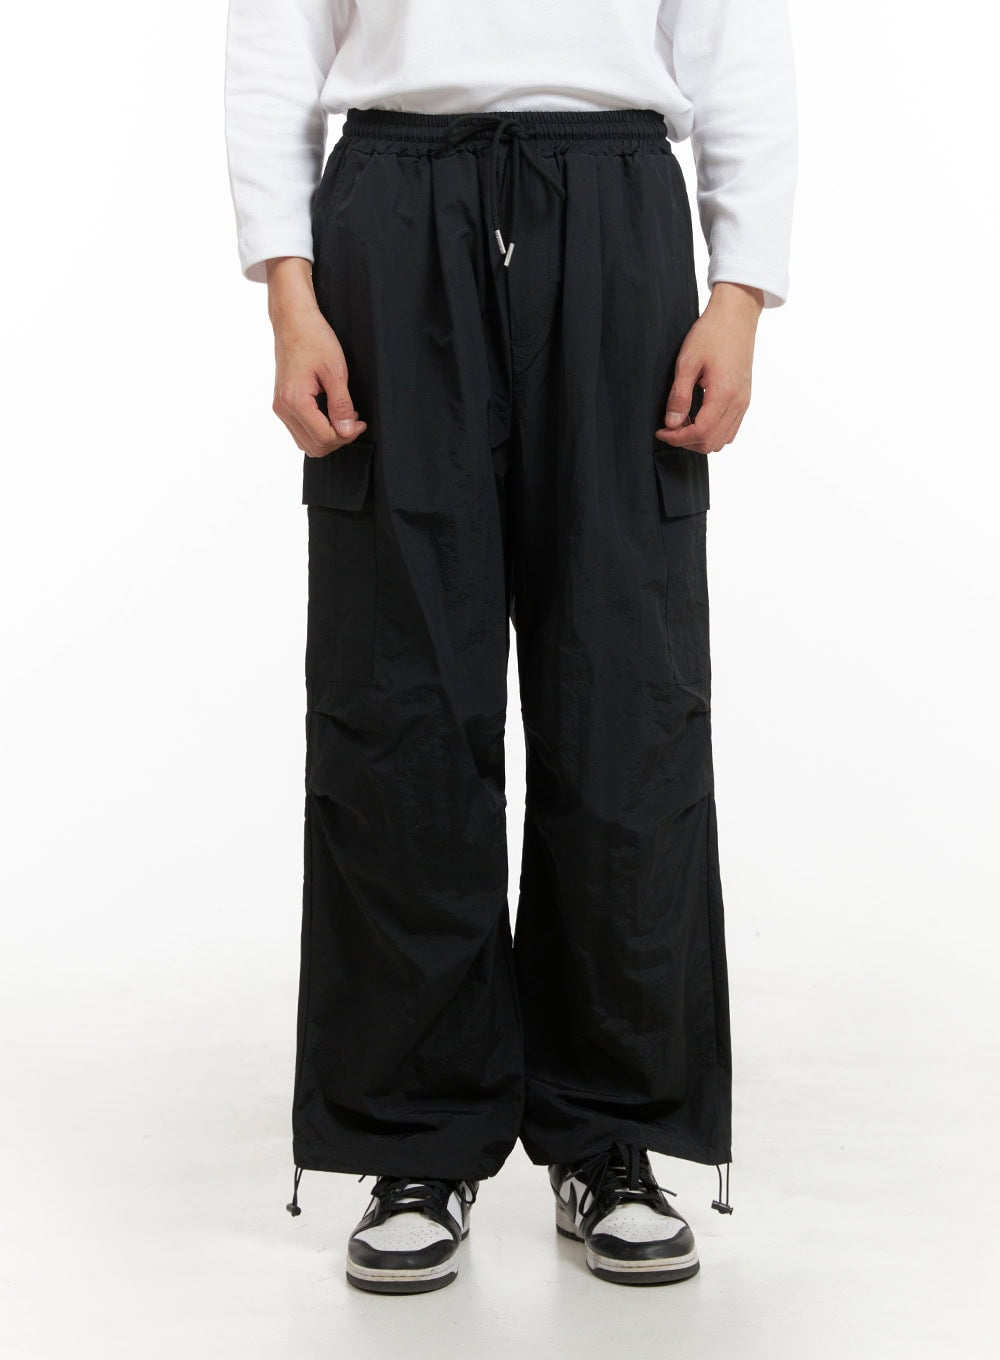 mens-wide-fit-parachute-pants-iy402 / Black